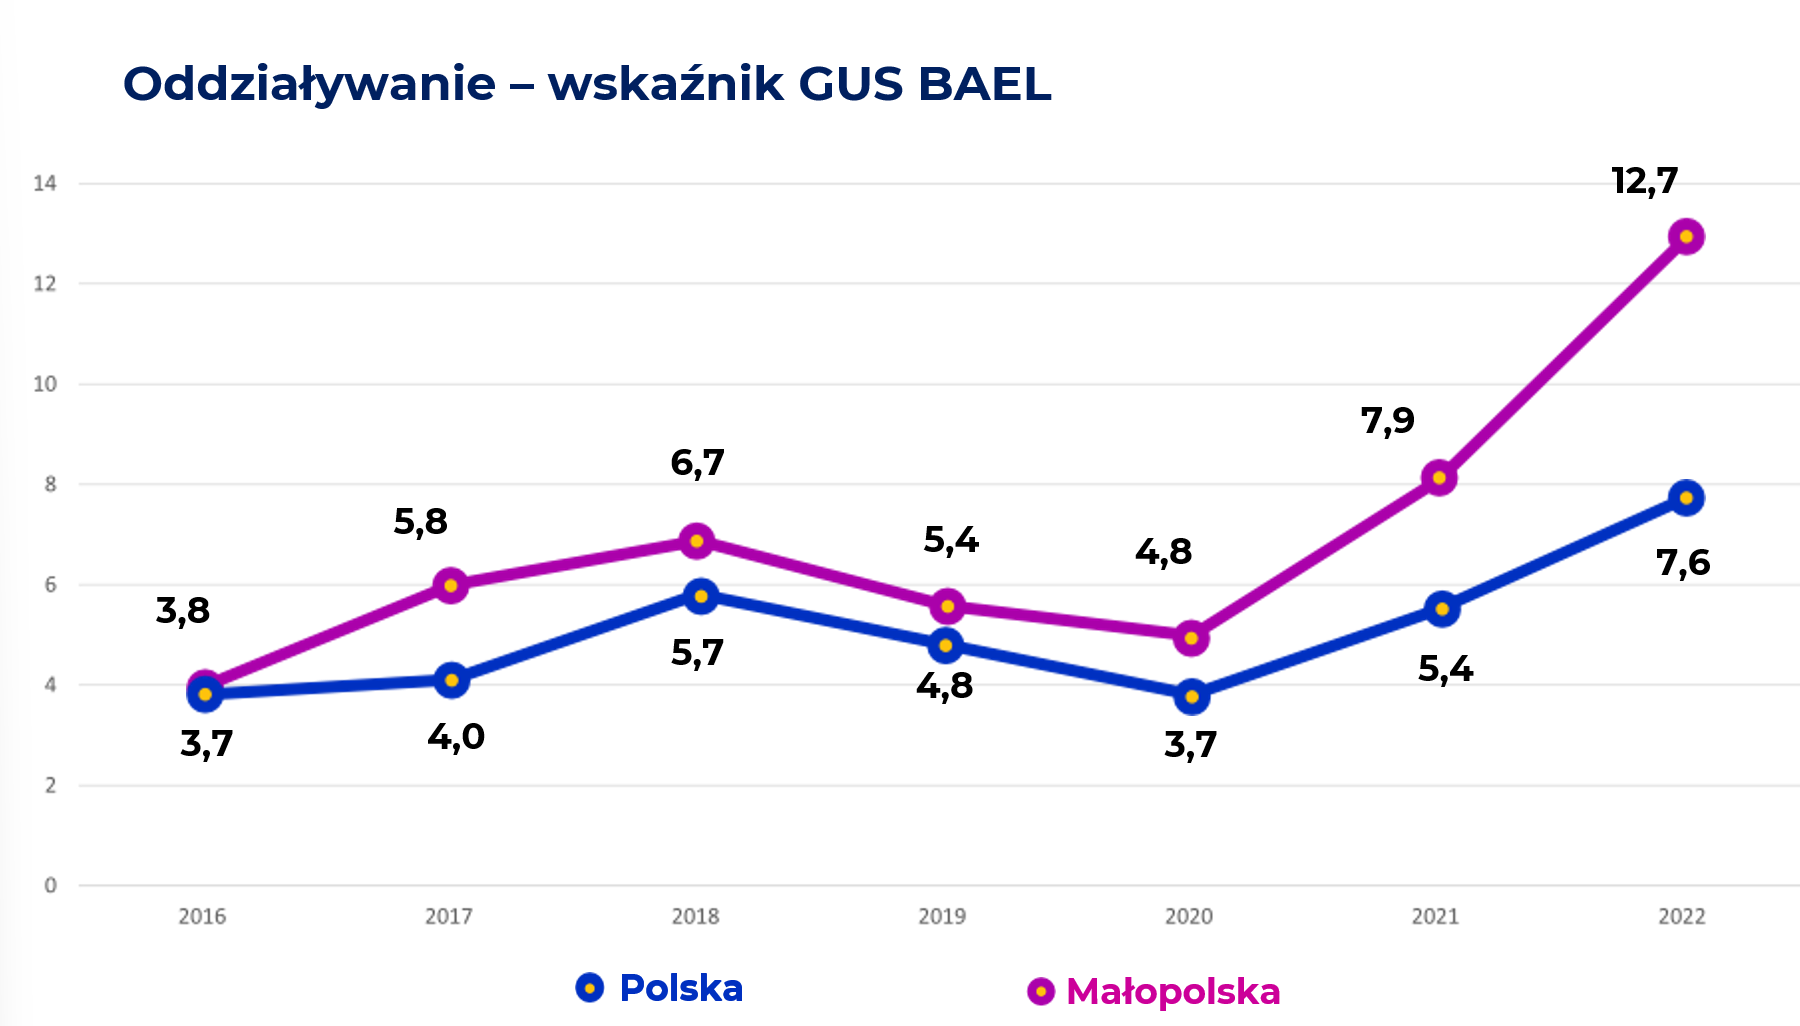 Wykres aktywności edukacyjnej osób dorosłych: startując z poziomu 3,7% w 2016 roku osiągnął wartość w 2022: 7,6% dla Polski i aż 12,7% dla Małopolski